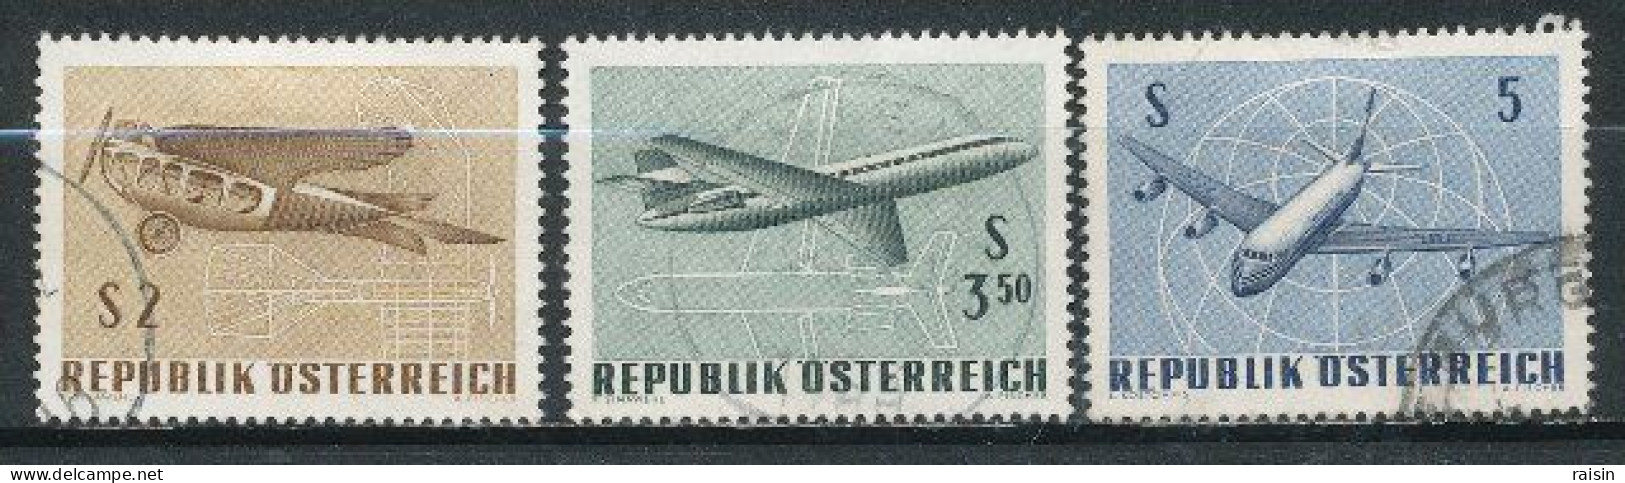 Autriche 1968  Michel 1262-65,  Yvert PA 63-65 - Gebraucht